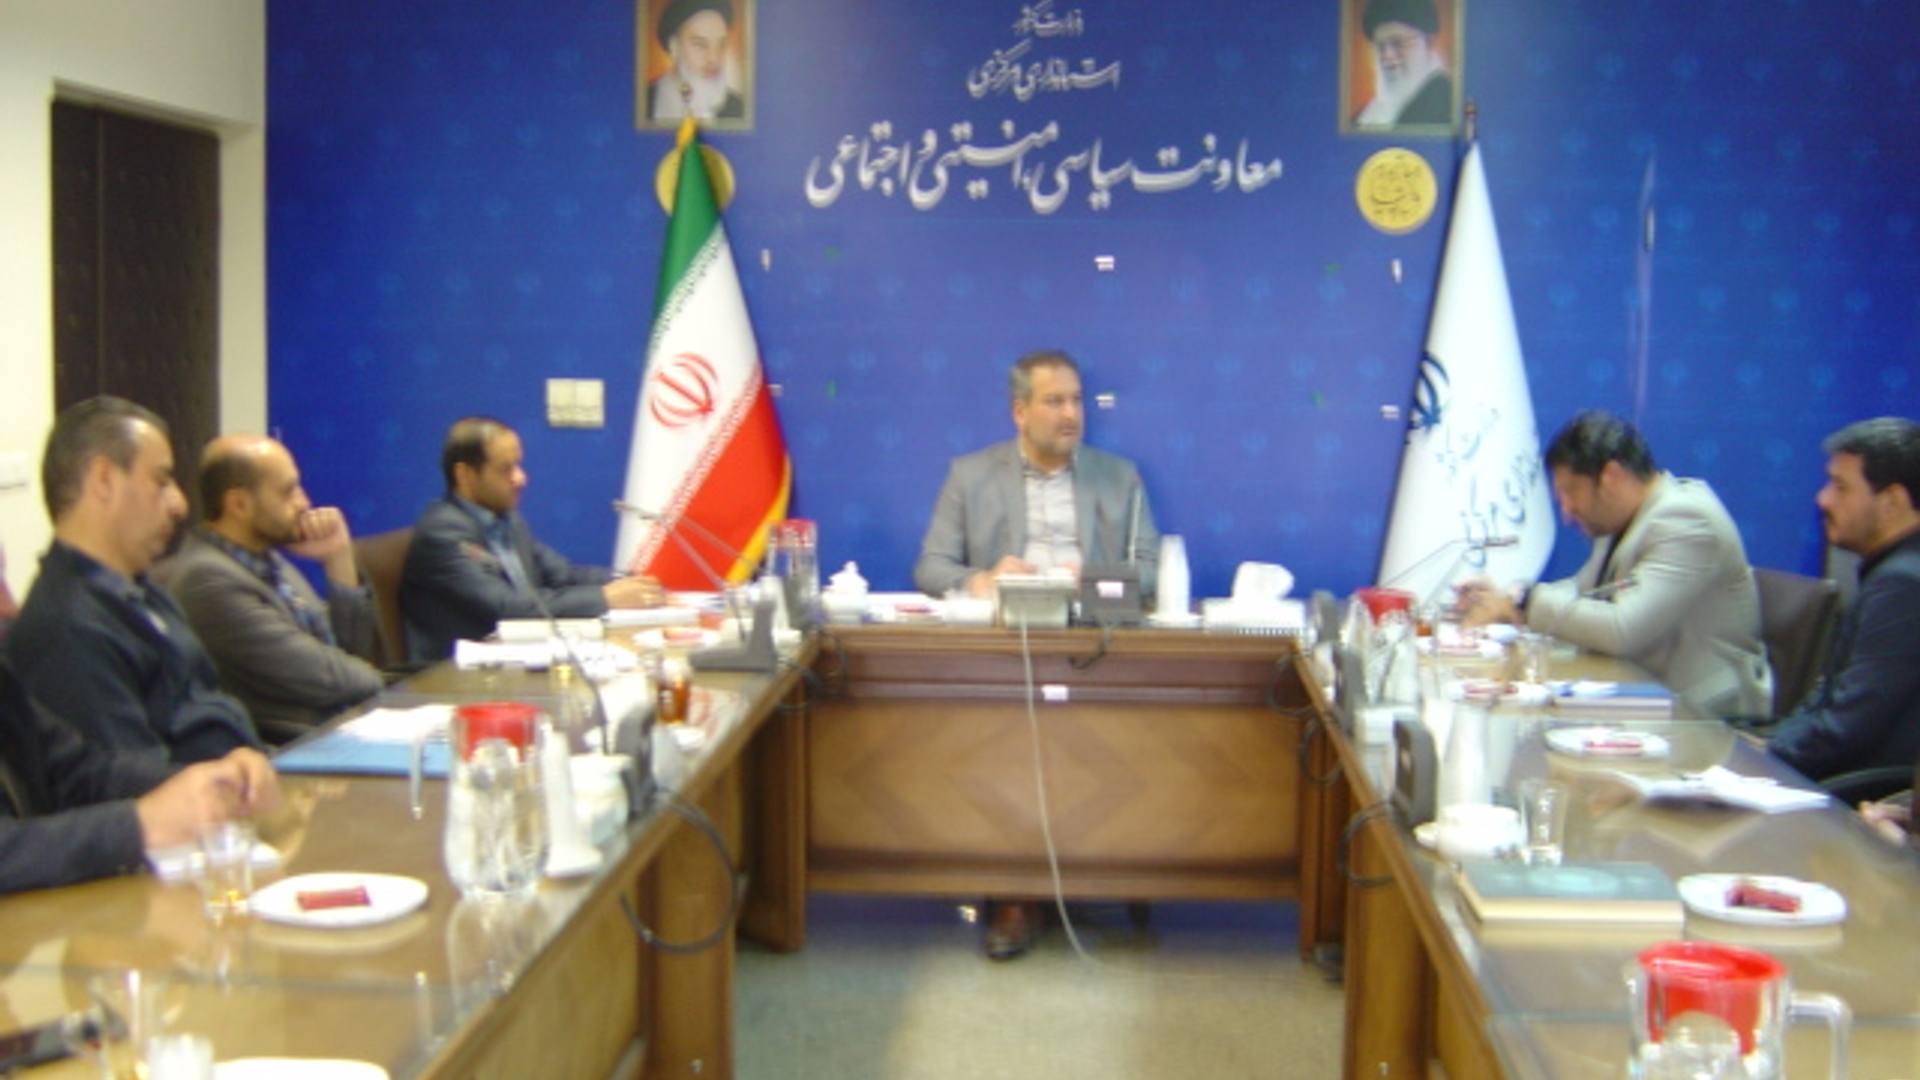 جلسه کمیسیون برآورد اطلاعات استان ساعت 8 صبح روز پنجشنبه مورخ 16-9-1402 به ریاست آقای رحیمی تبار مدیر کل امنیتی و انتظامی برگزار گردید.